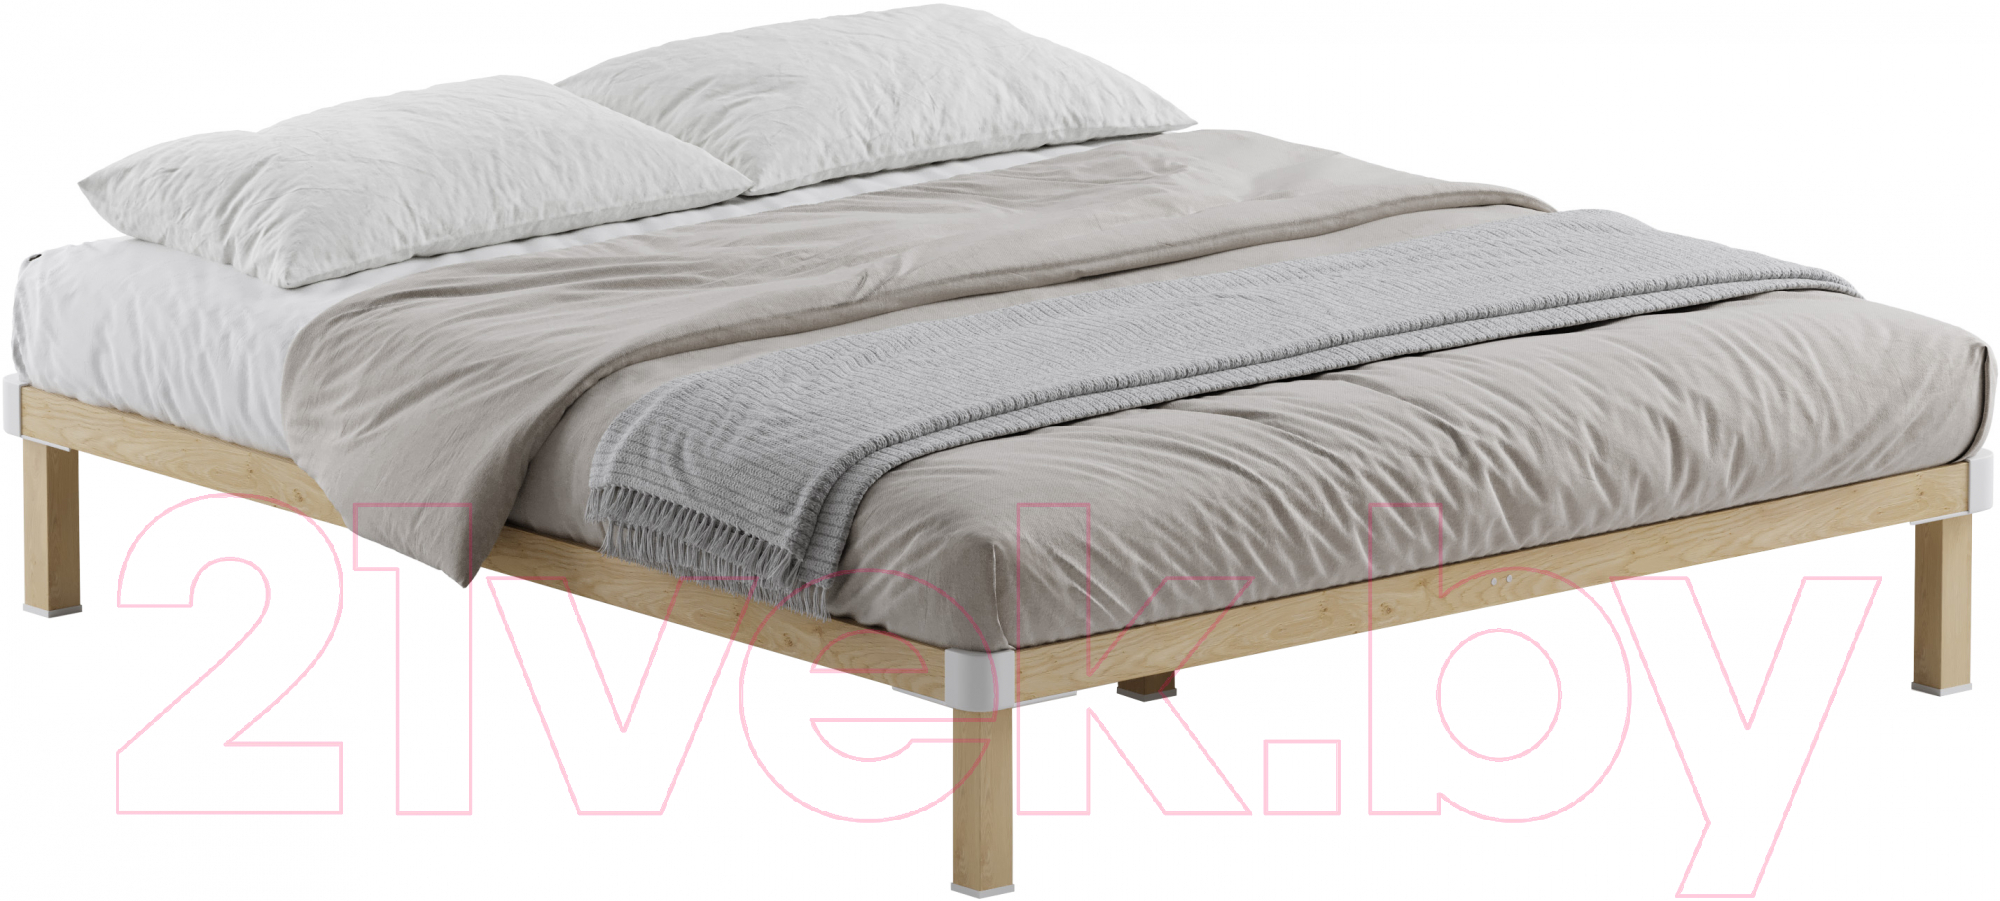 Двуспальная кровать Домаклево Канапе 2 200x200